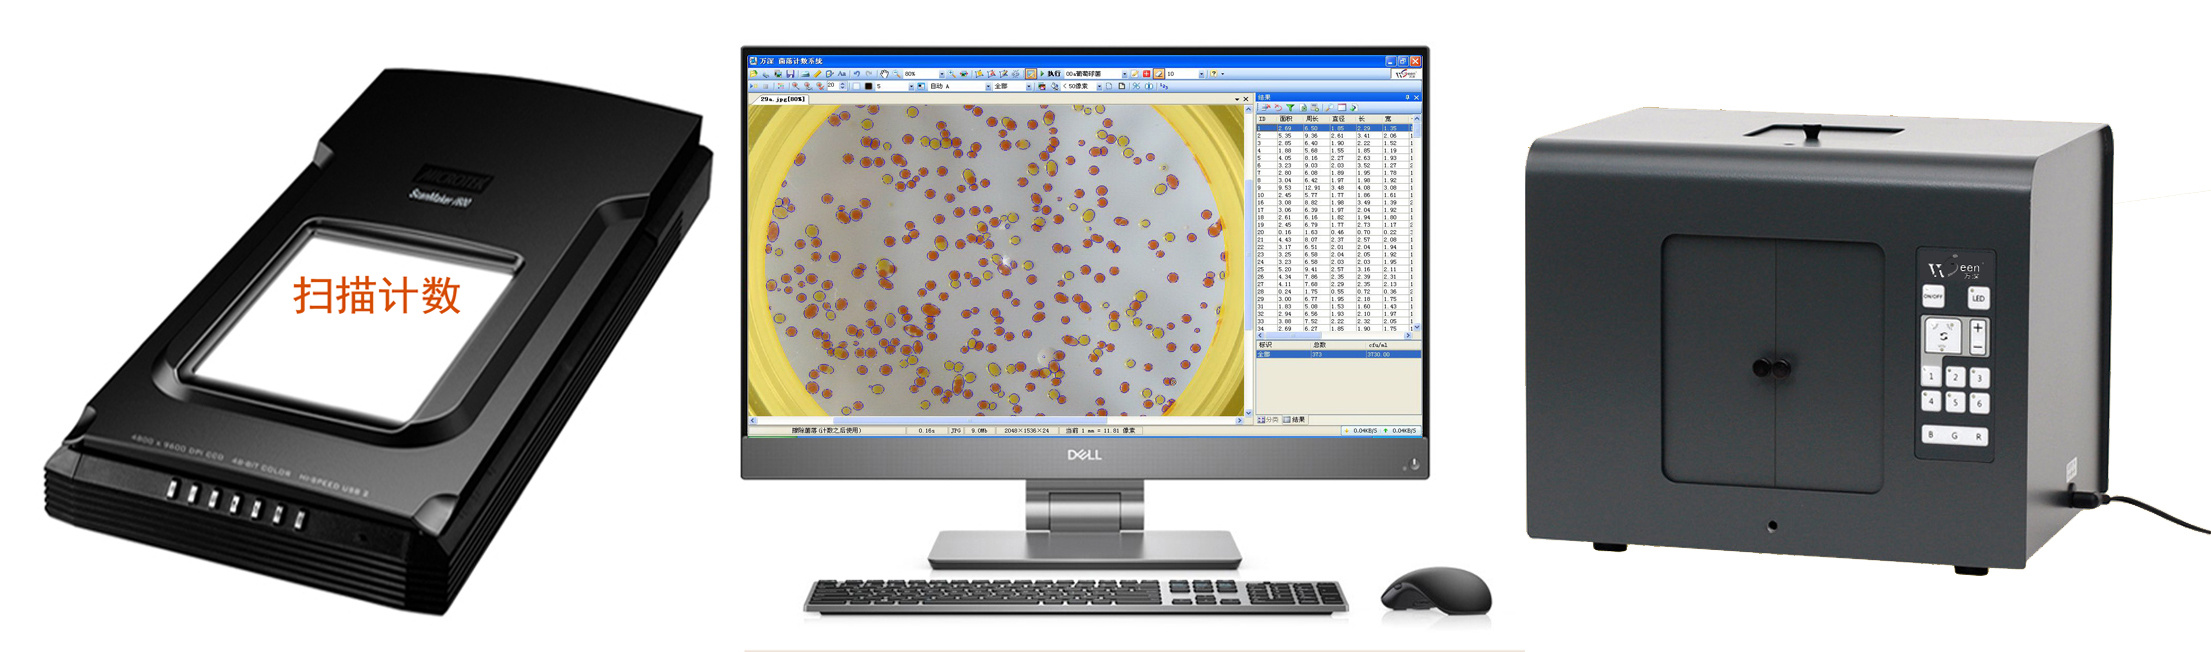 自动分析培养皿或超大平板上的抗生素效价、乳酸链球菌素效价方法